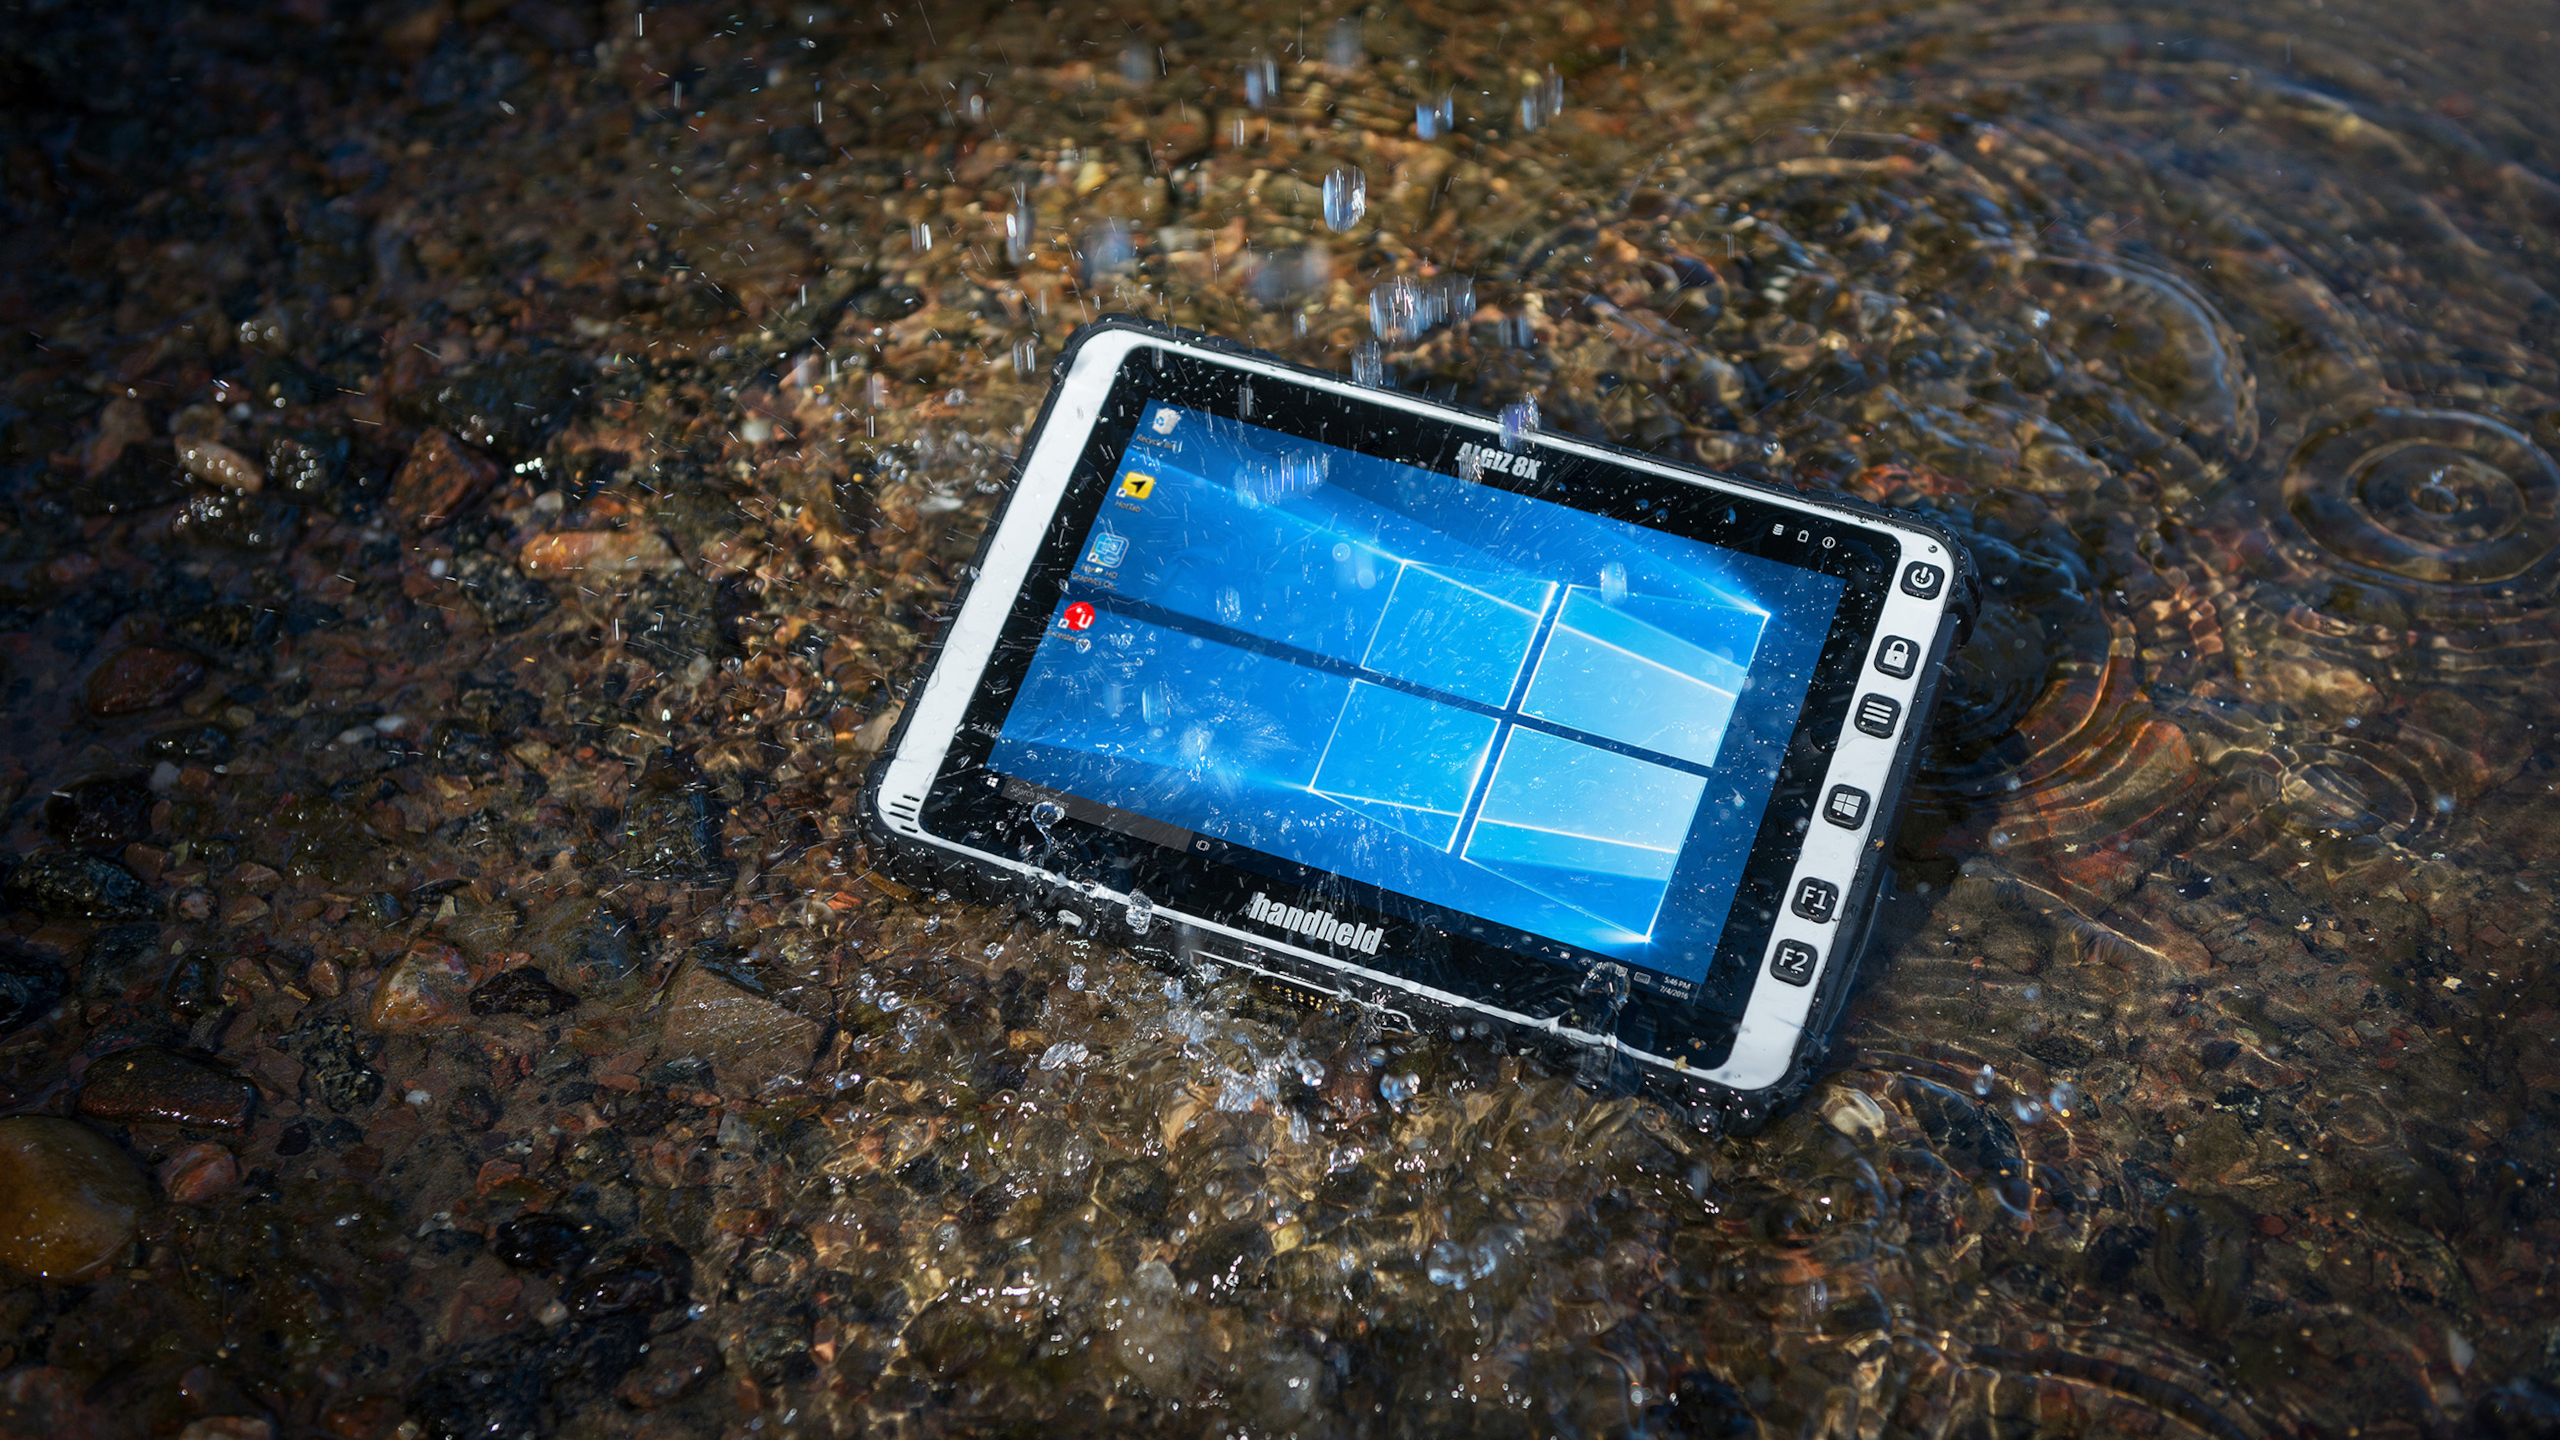 Technology Windows 10 Underwater Tablet 2560x1440